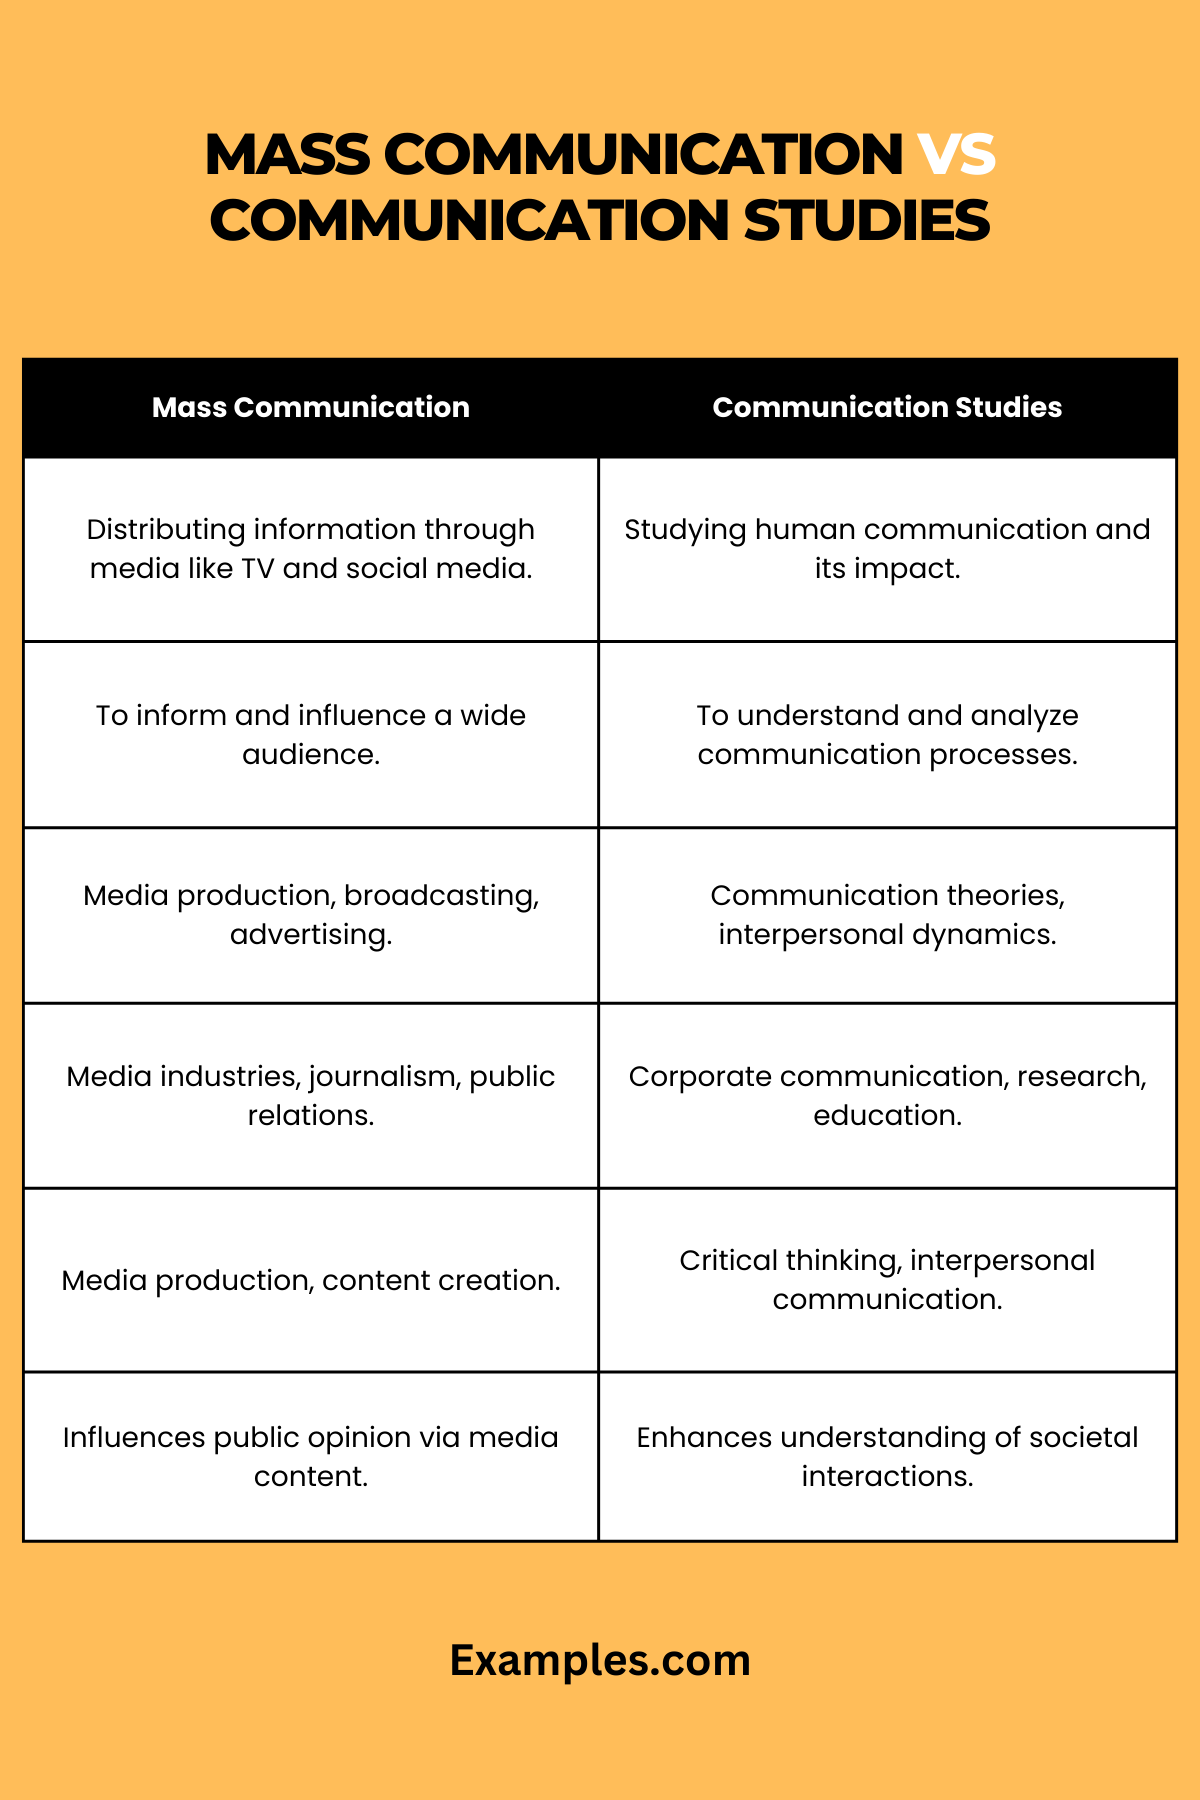 Mass Communication vs Communication Studies